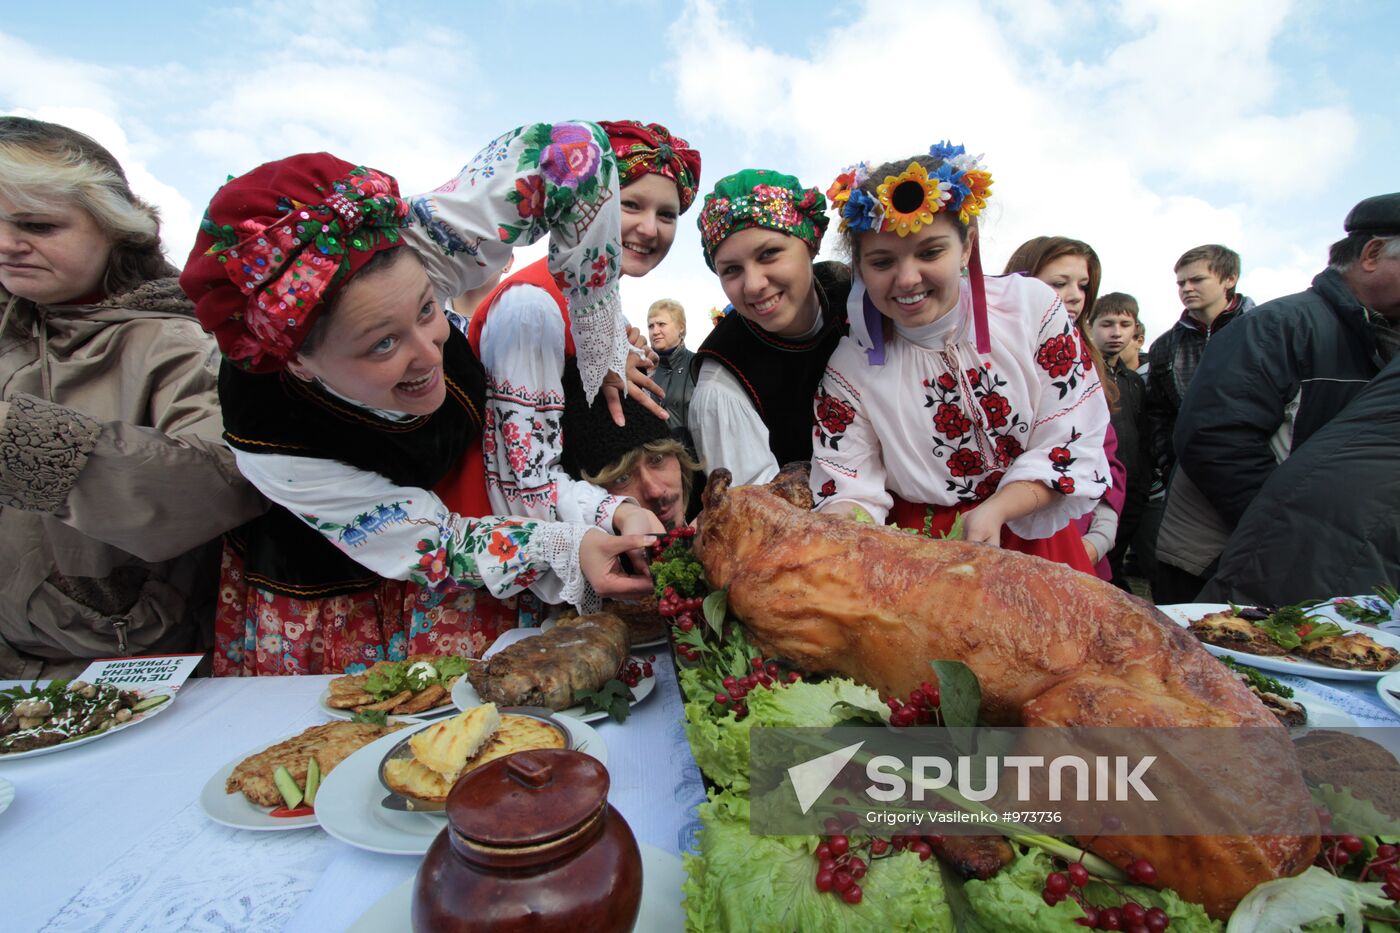 Pork festival in Mirgorod, Poltava Region